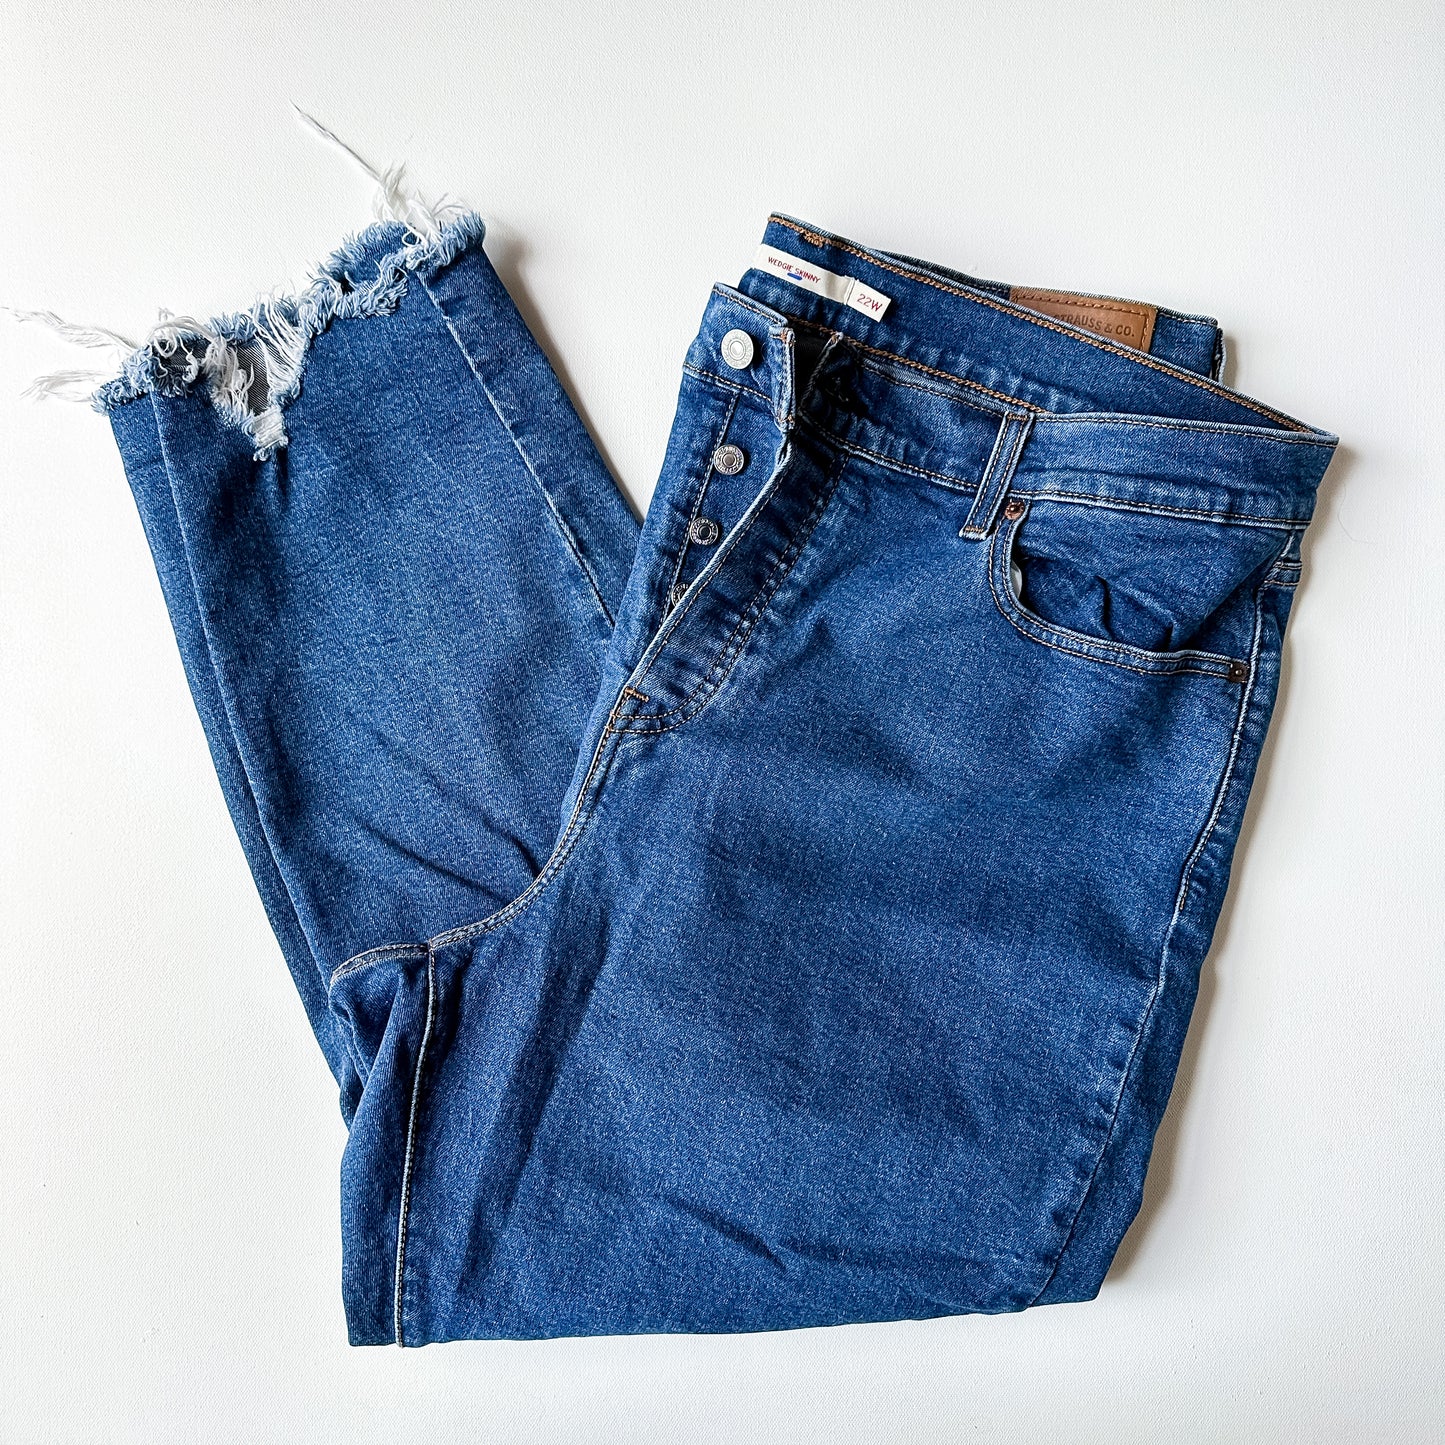 Levi’s Wedgie Skinny Jeans (size 22W)